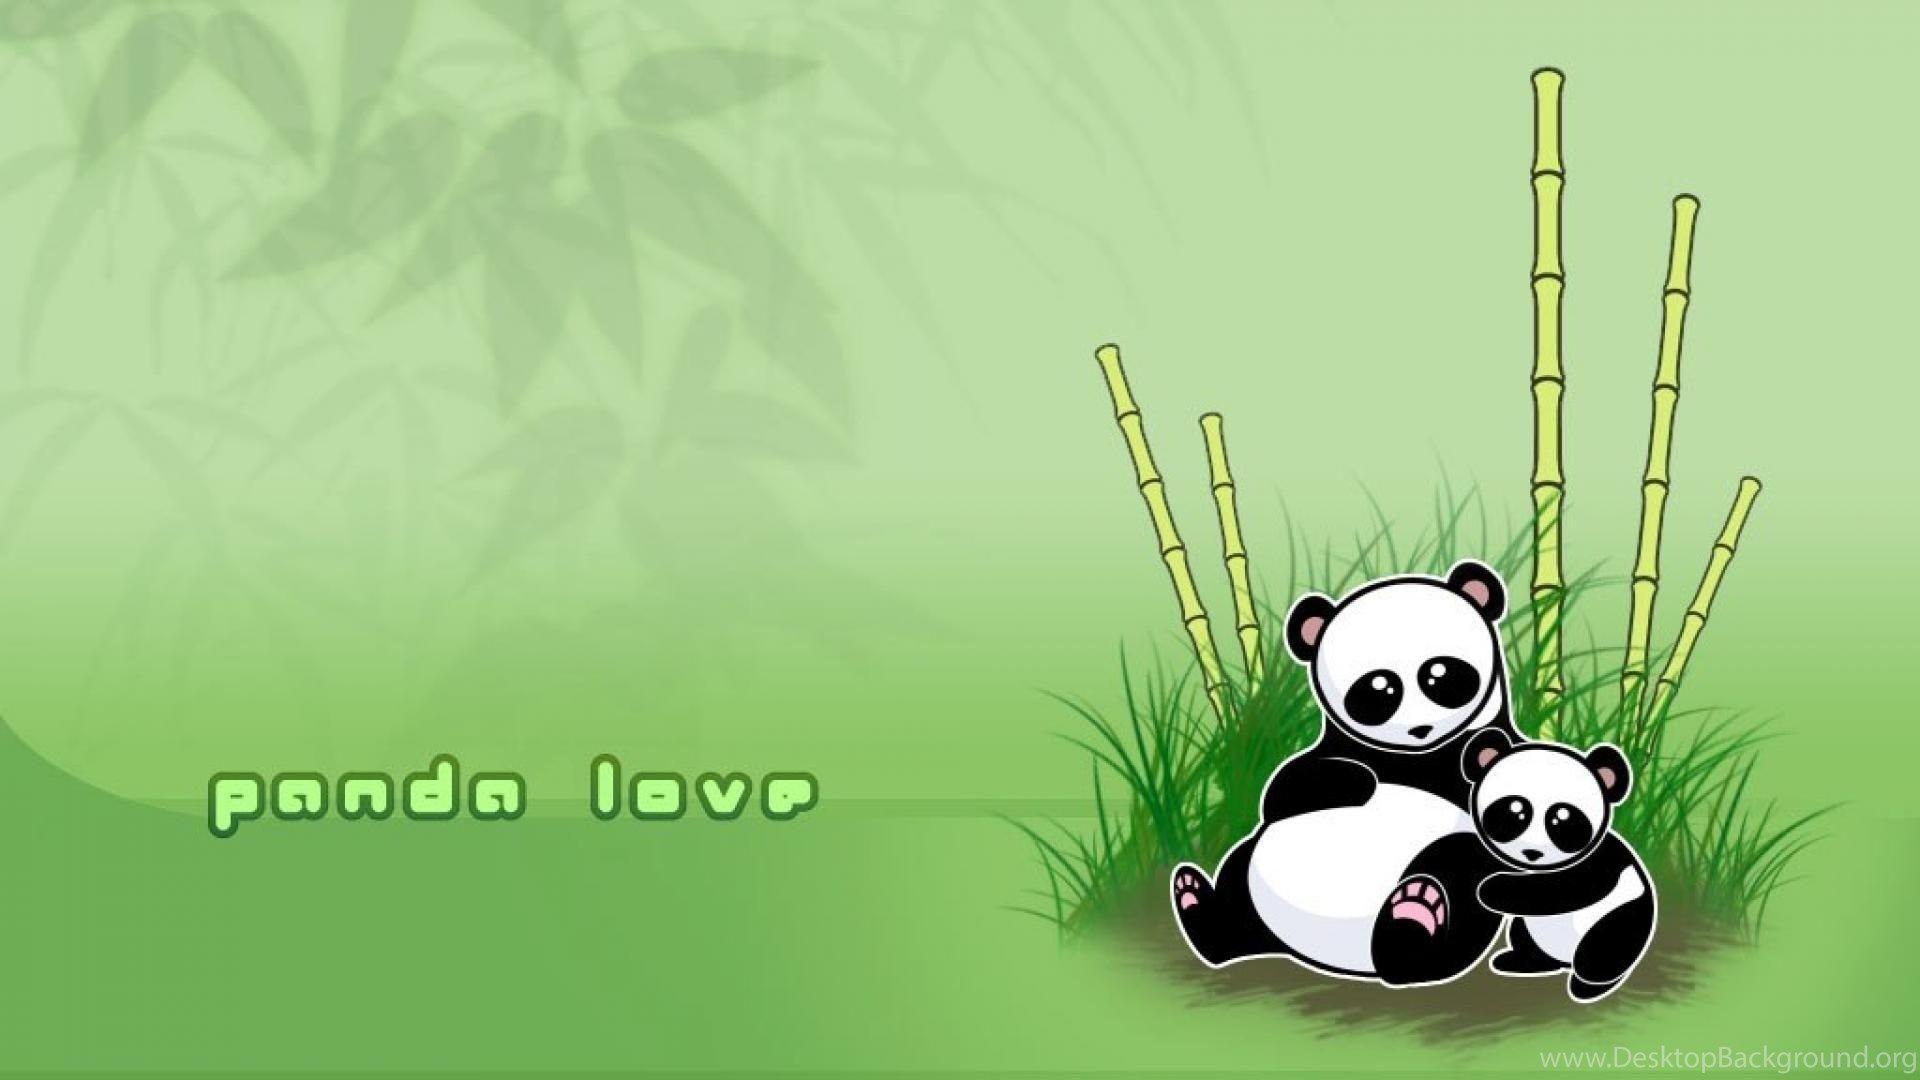 Cute HD for desktop panda love wallpaper Desktop